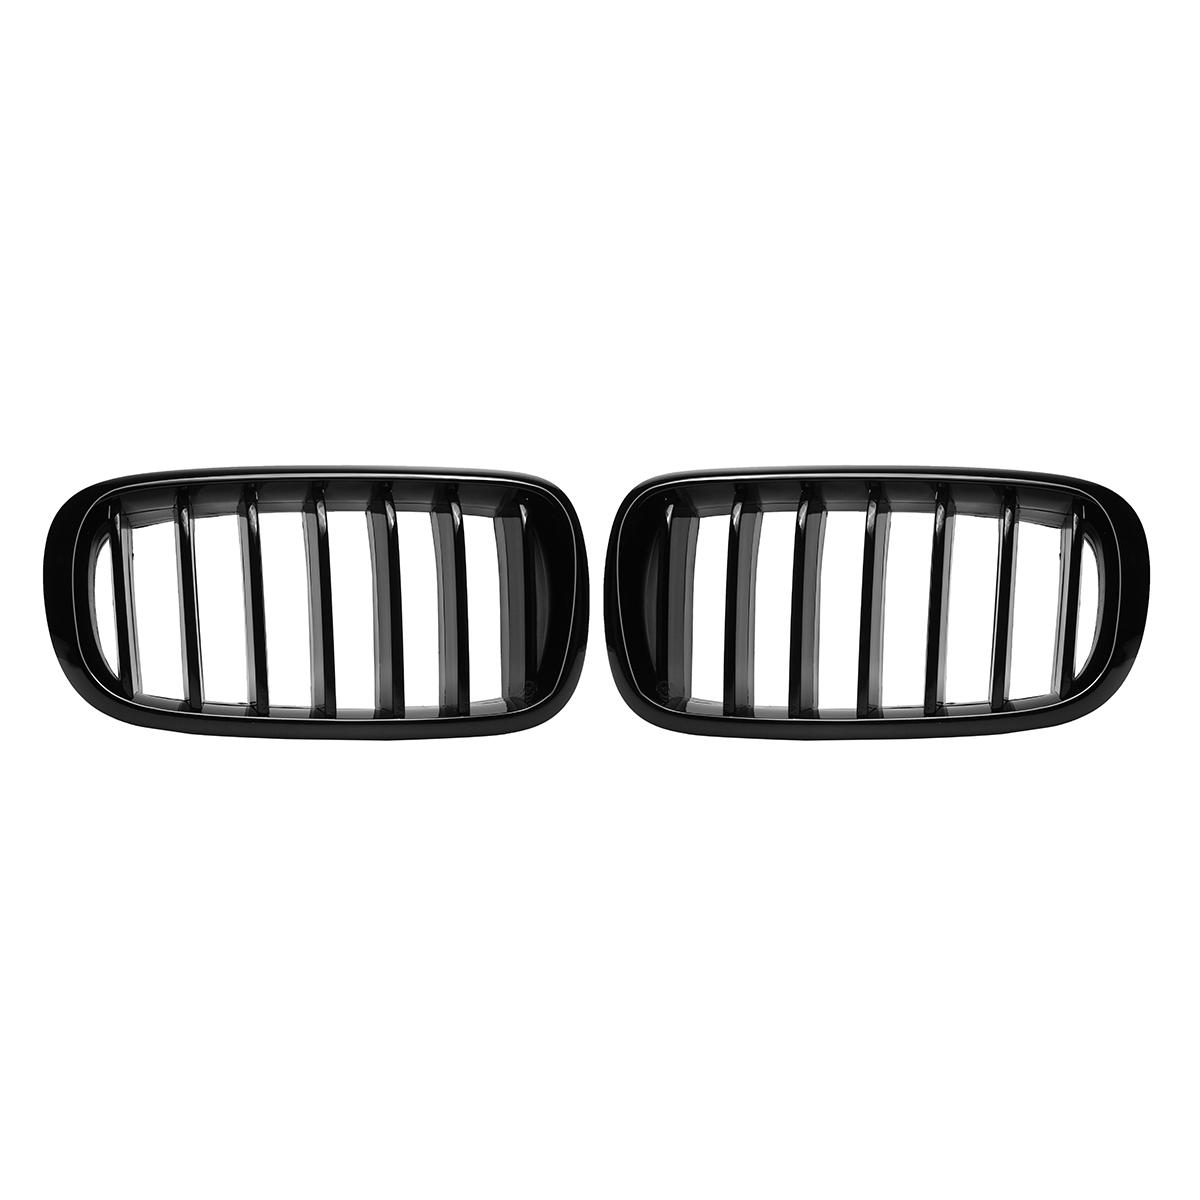 

One Пара Авто Глянцевая черная передняя решетка решетки для почек для BMW X5 F15 X6 F16 2014-2017